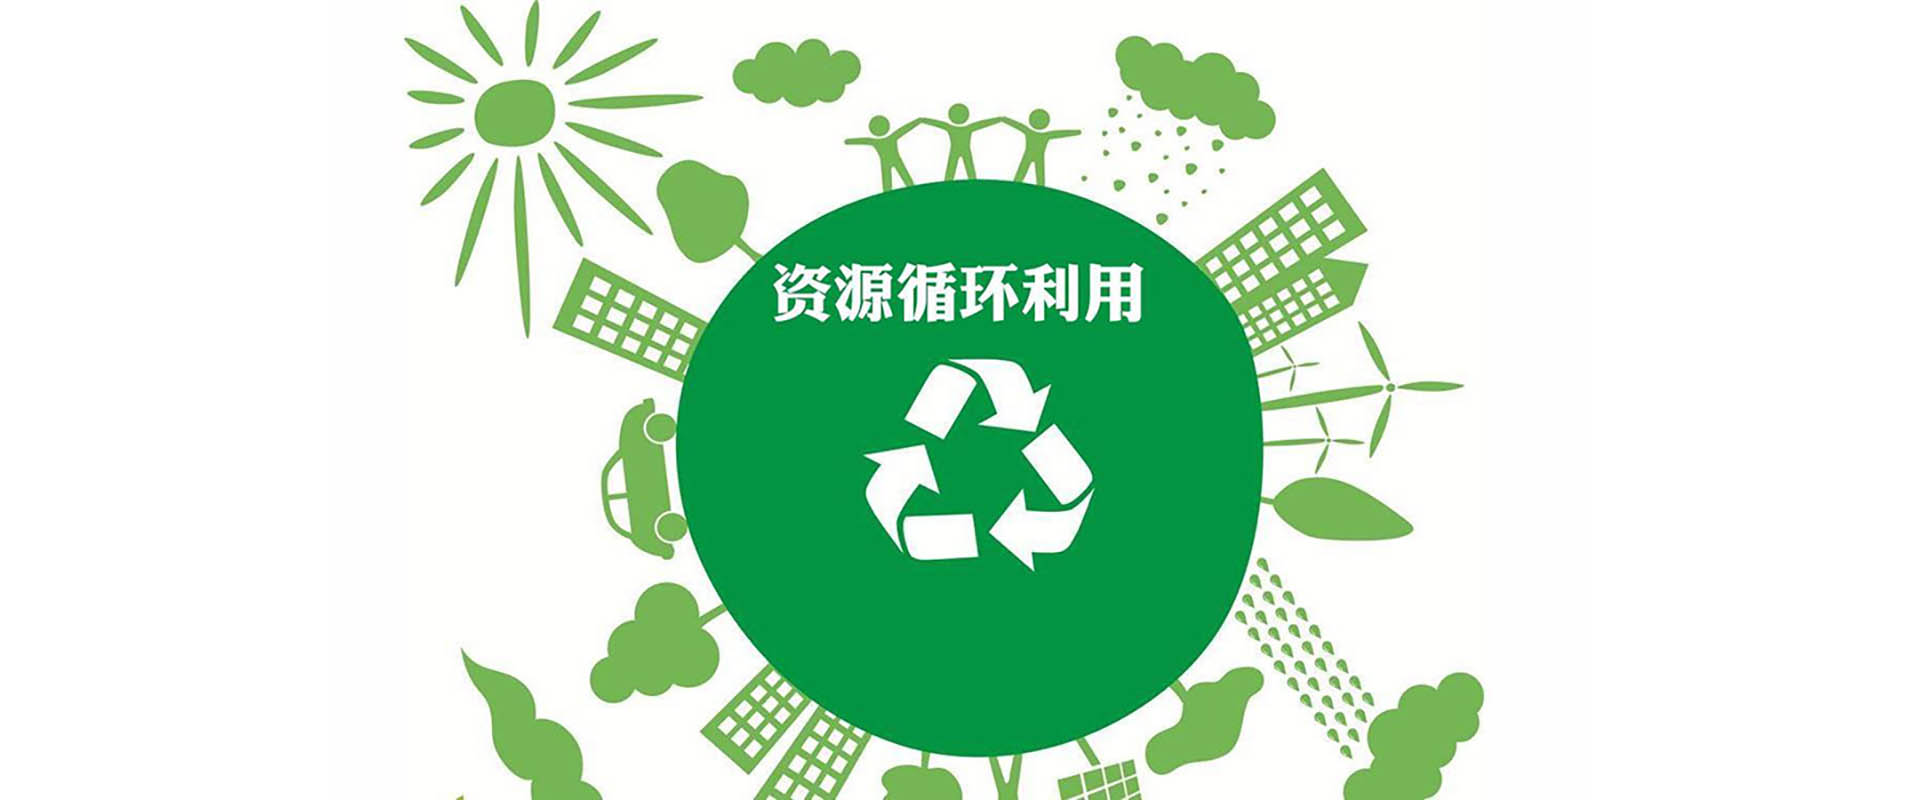 “易客发”再生资源预约回收服务平台项目